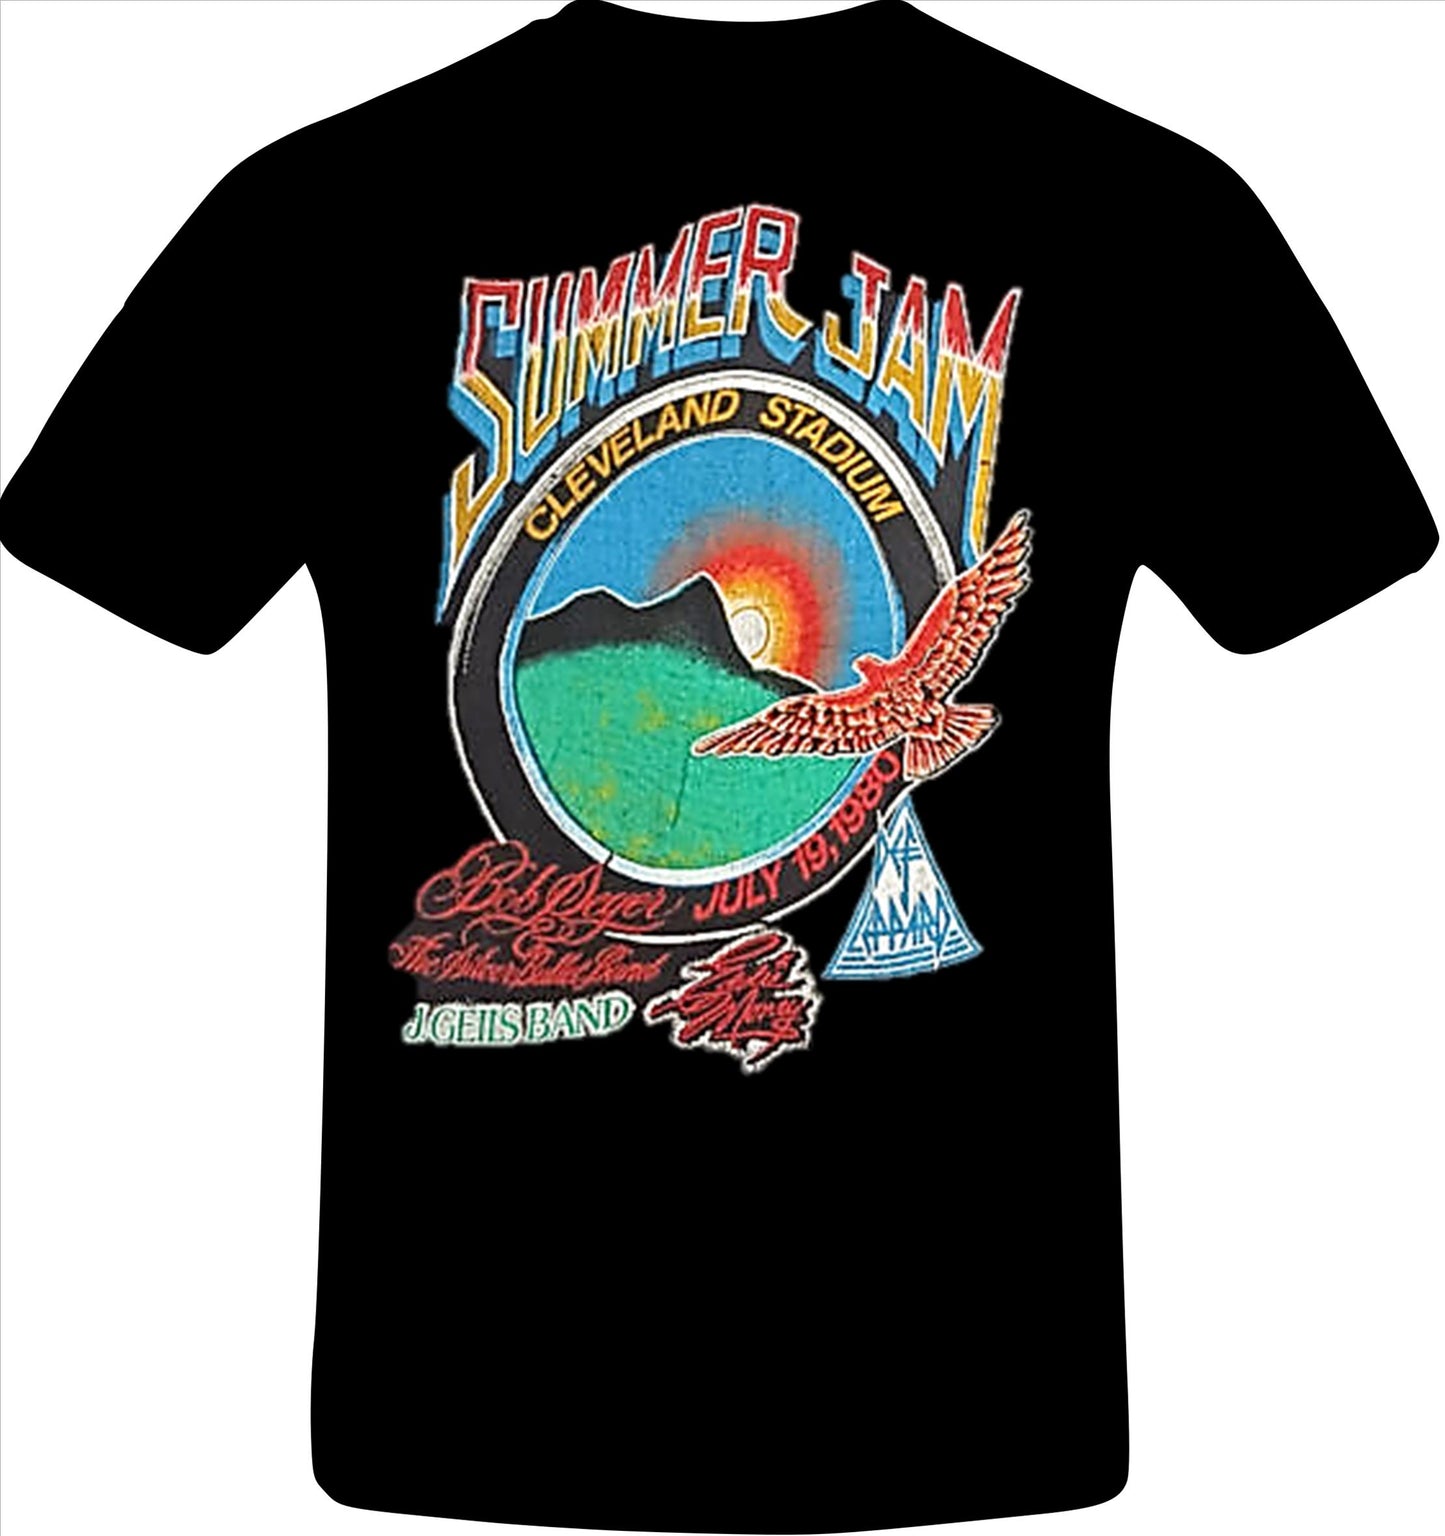 World Series of Rock 1980 Summer Jam Shirt